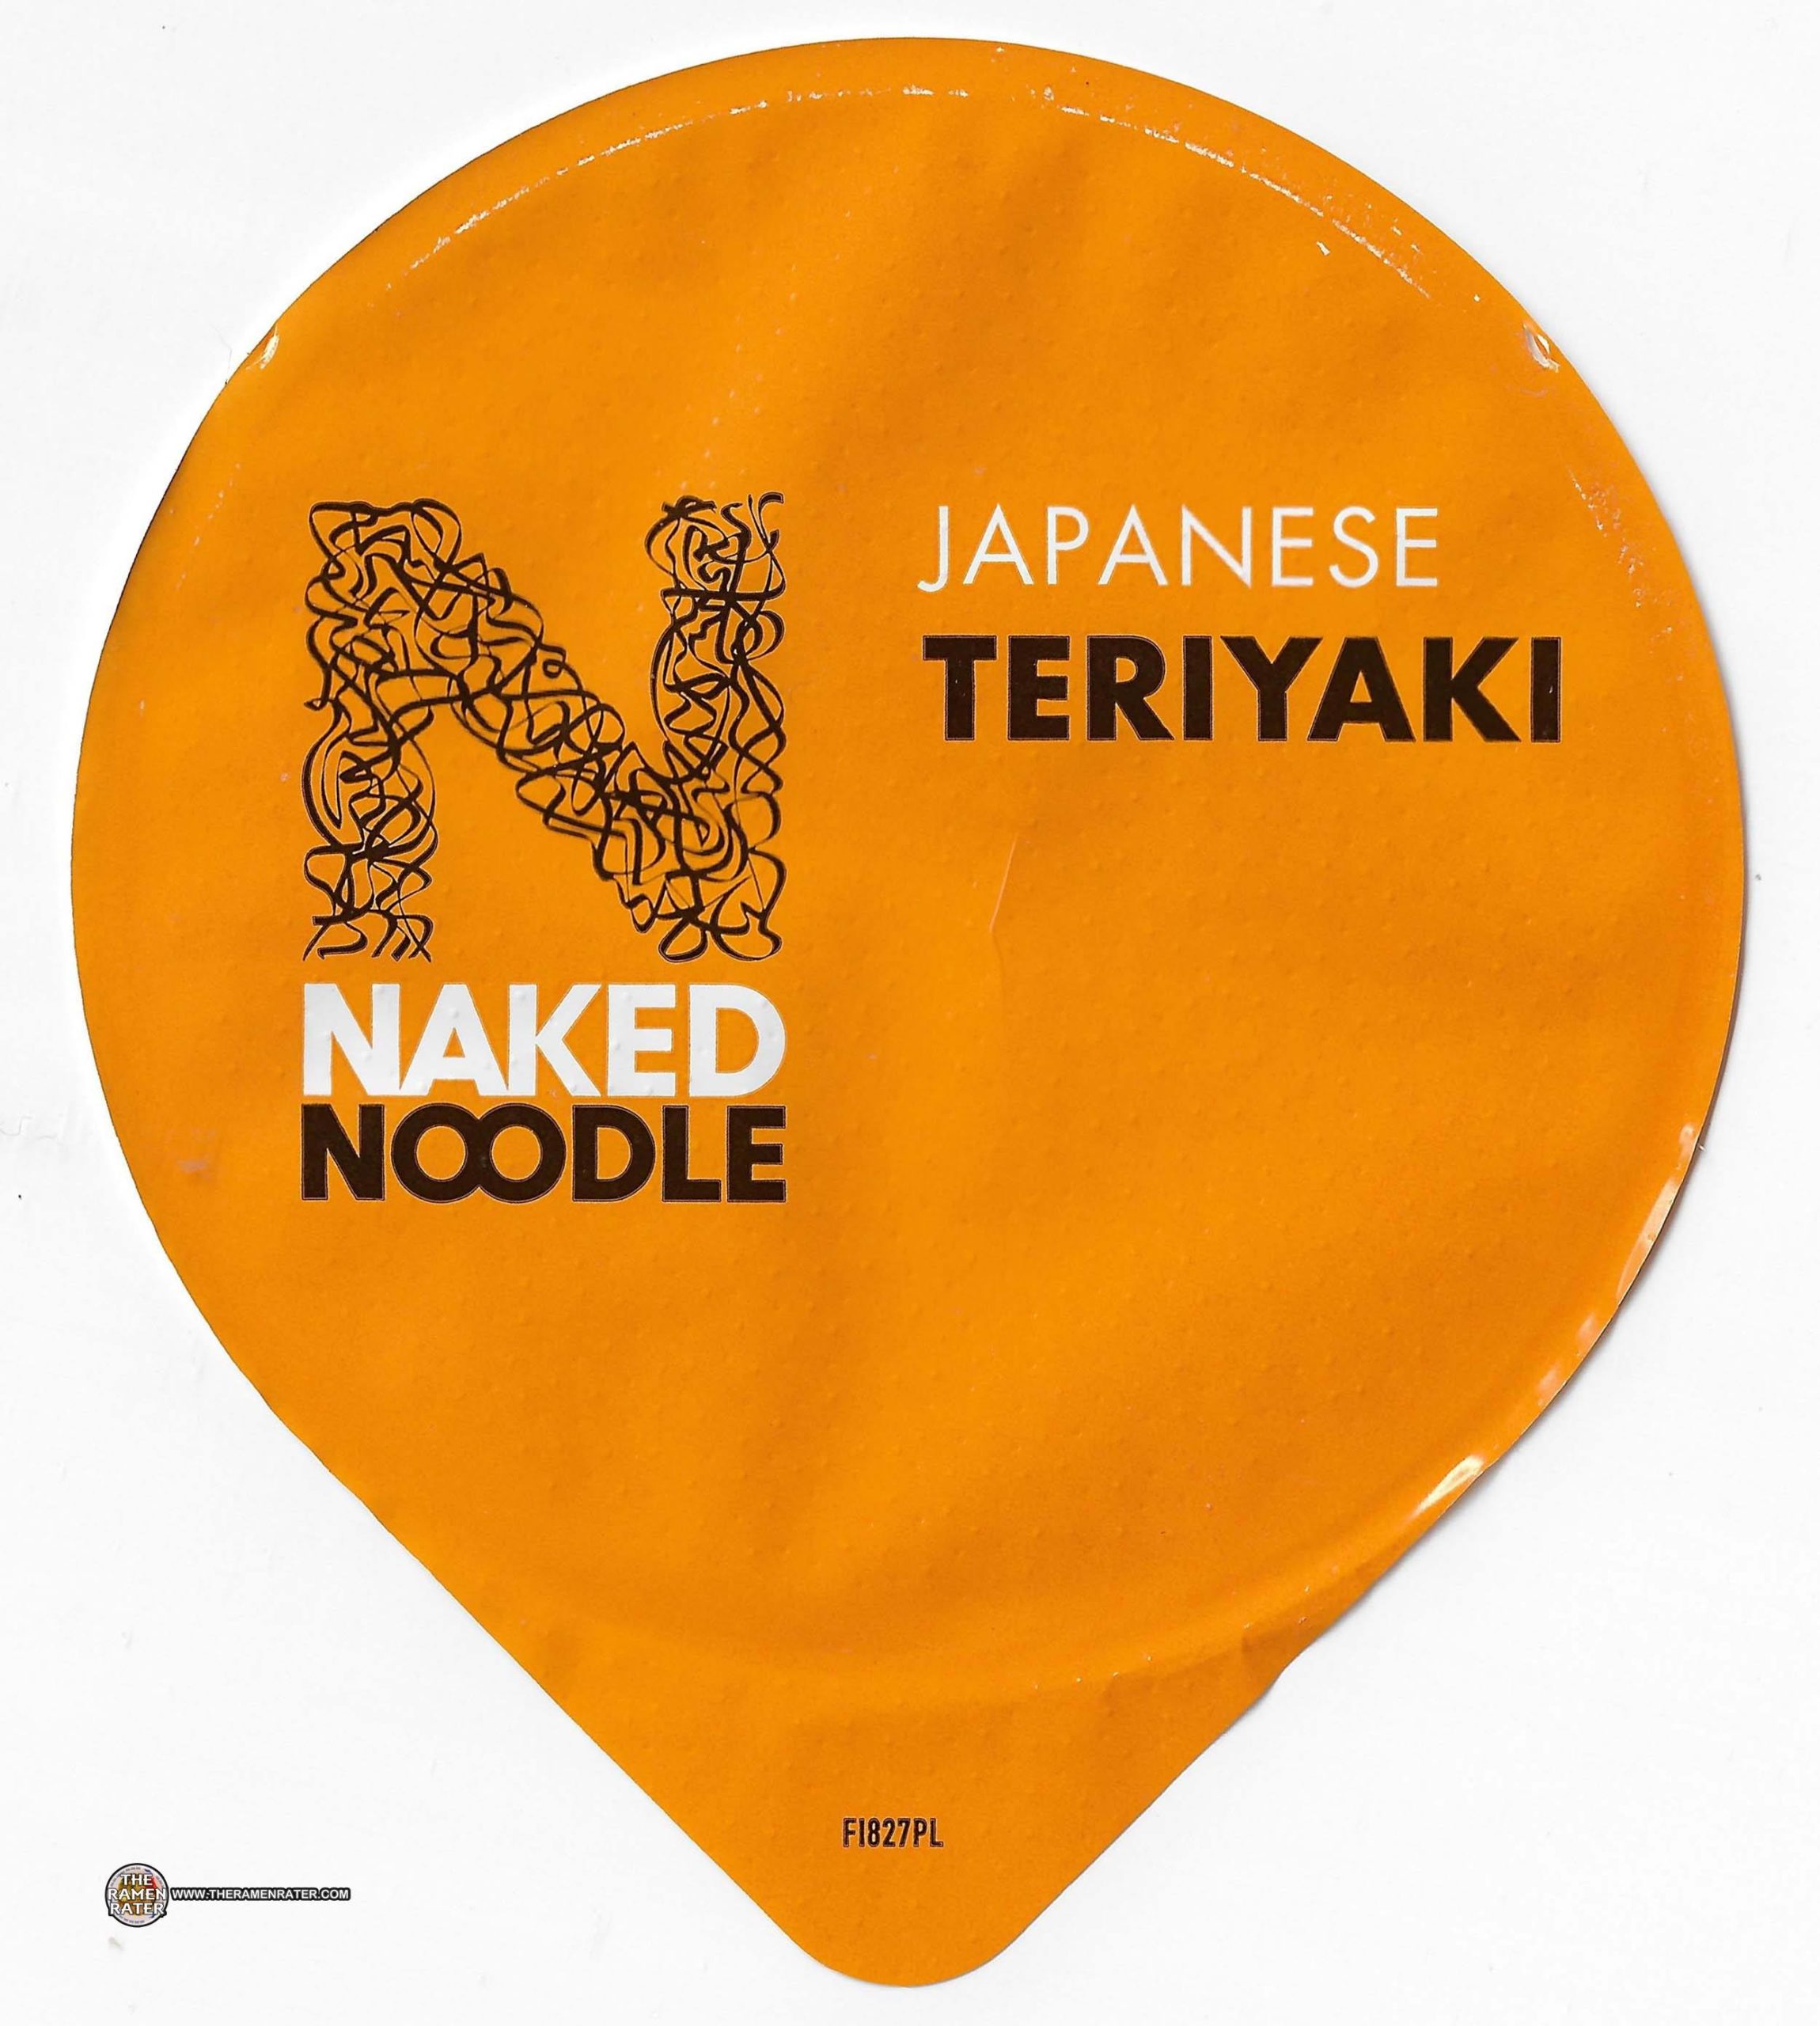 2300px x 2560px - 4252: Naked Noodle Japanese Teriyaki - United Kingdom